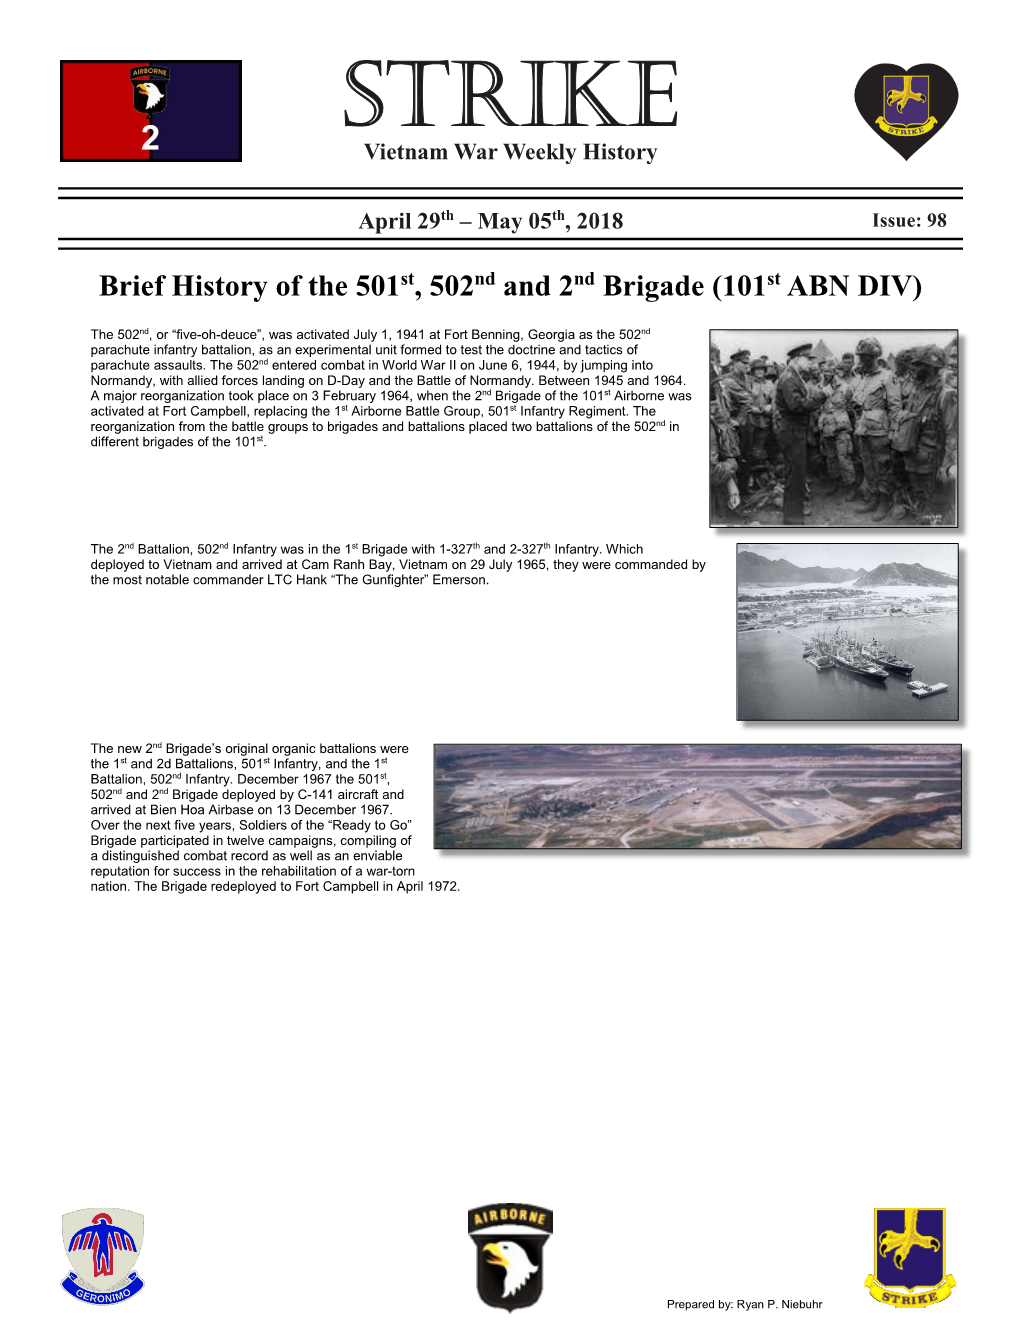 STRIKE Vietnam War Weekly History